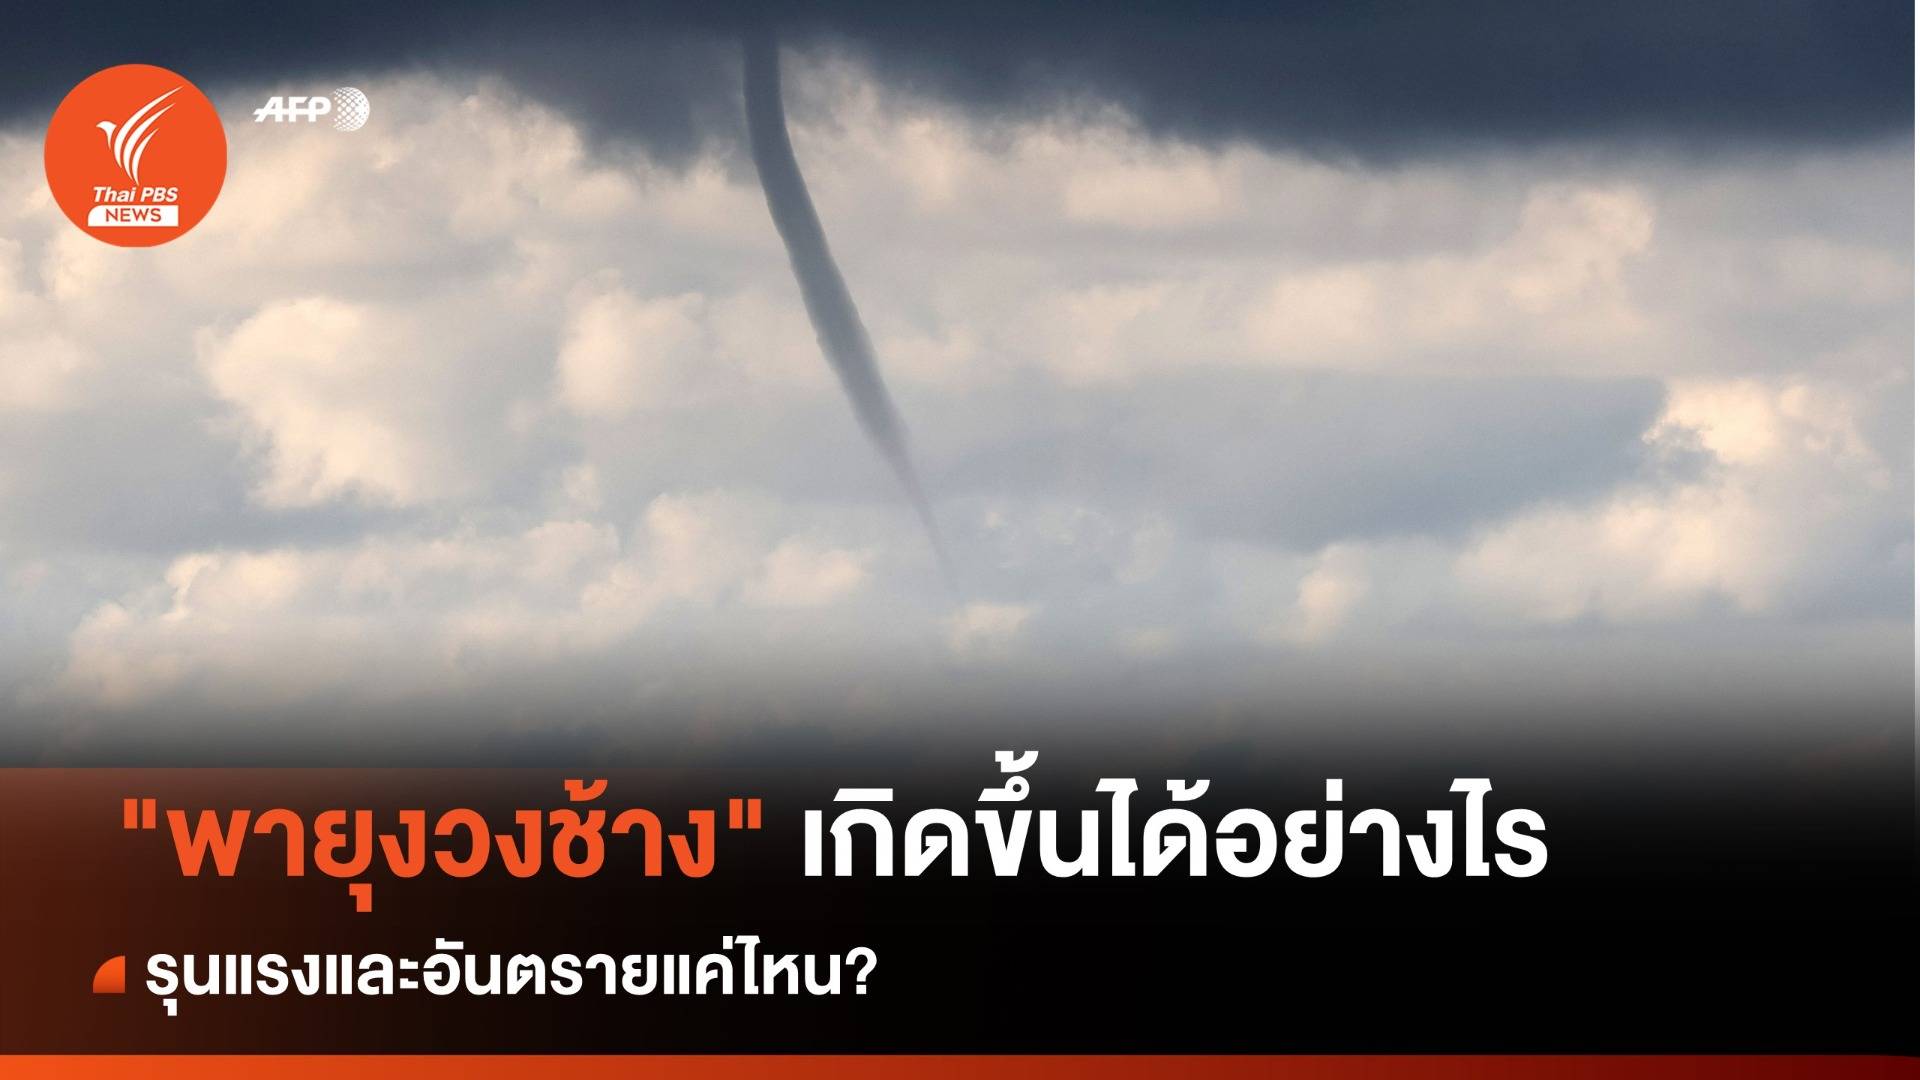 พายุงวงช้าง" เกิดขึ้นได้อย่างไร-รุนแรงอันตรายแค่ไหน? | Thai PBS News  ข่าวไทยพีบีเอส